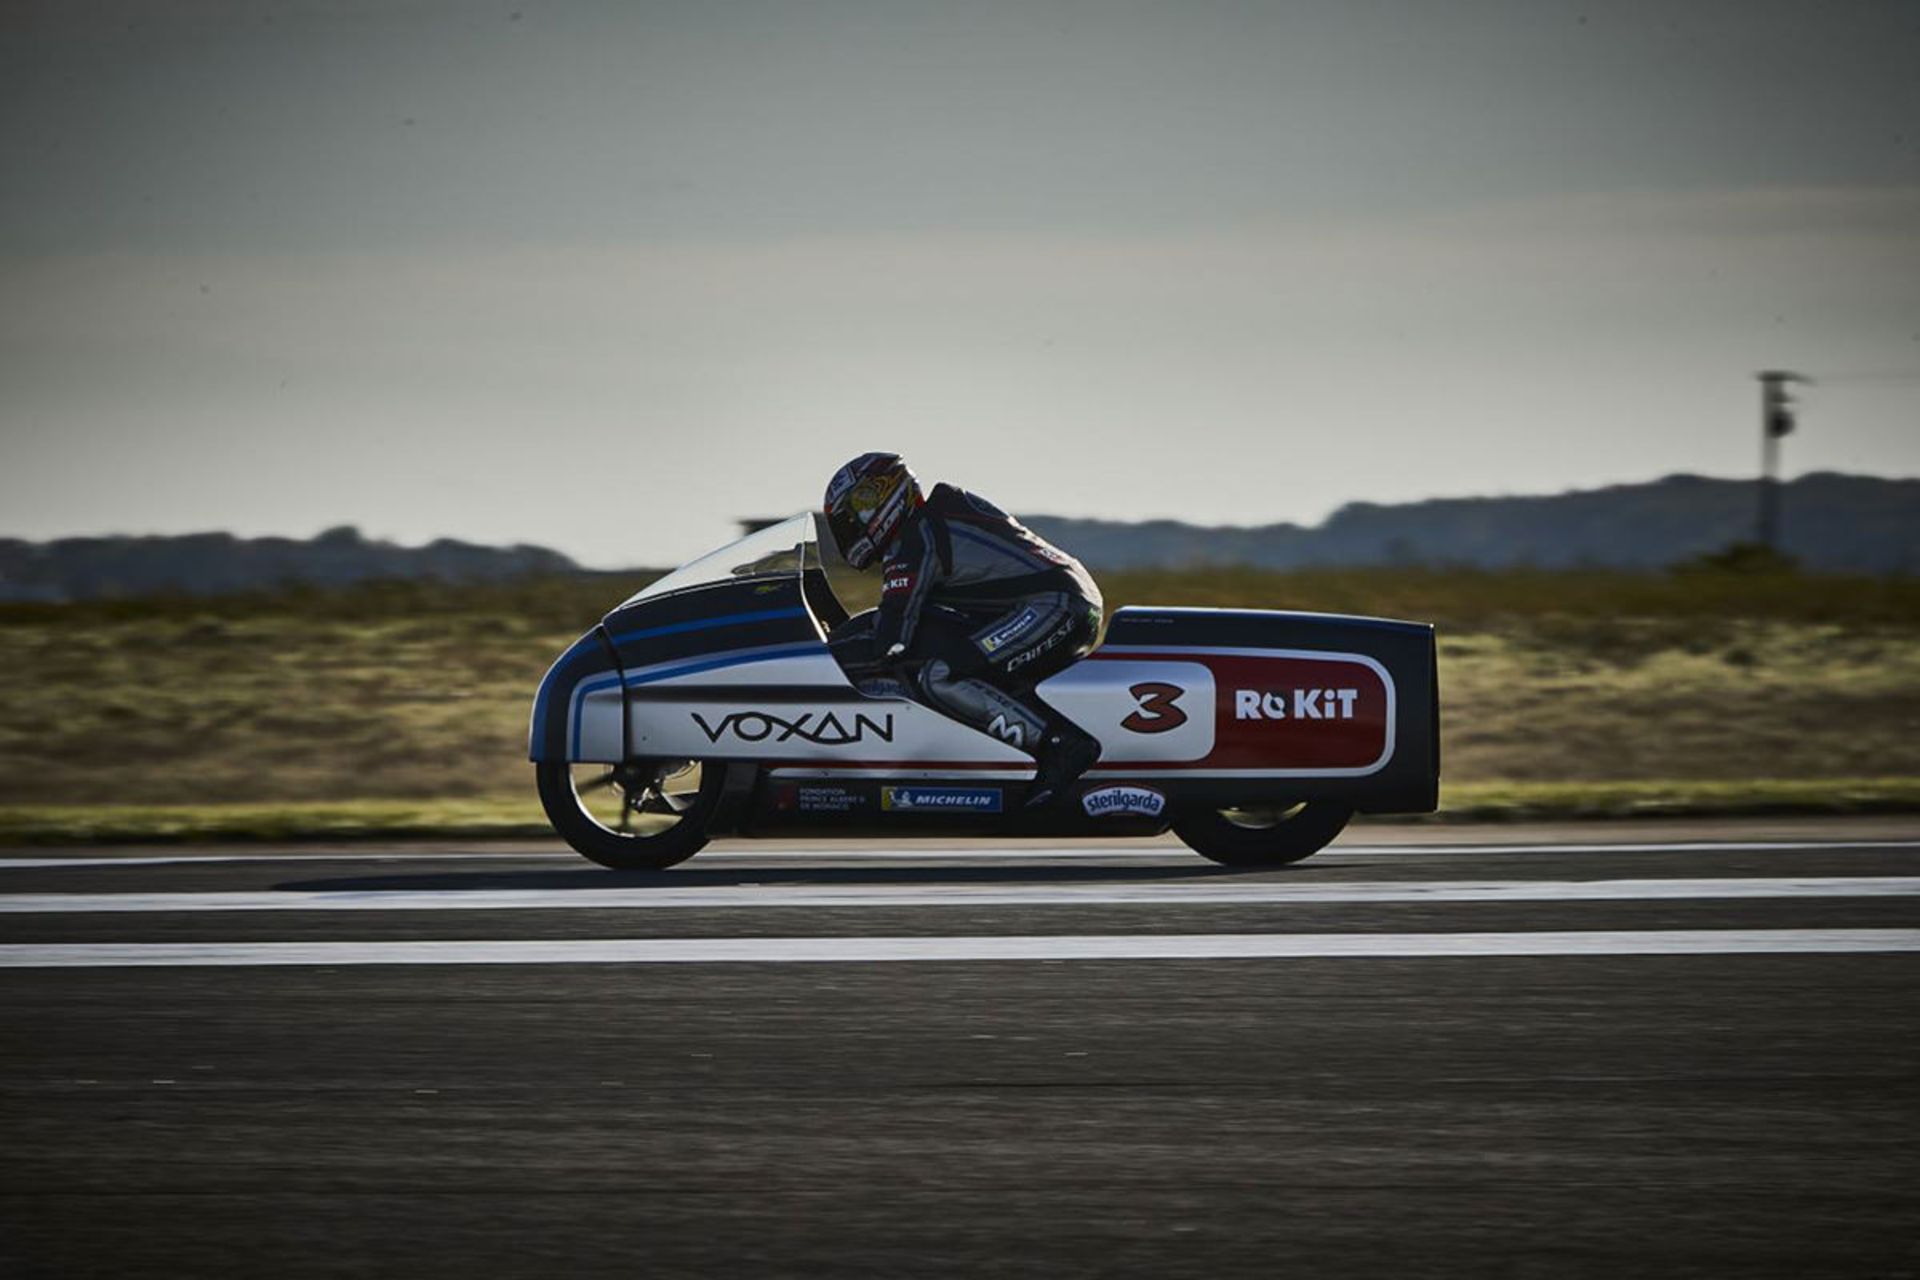 نمای جانبی موتورسیکلت برقی وکسان واتمن / Voxan Wattman electric motorcycle در حال ثبت رکورد سرعت